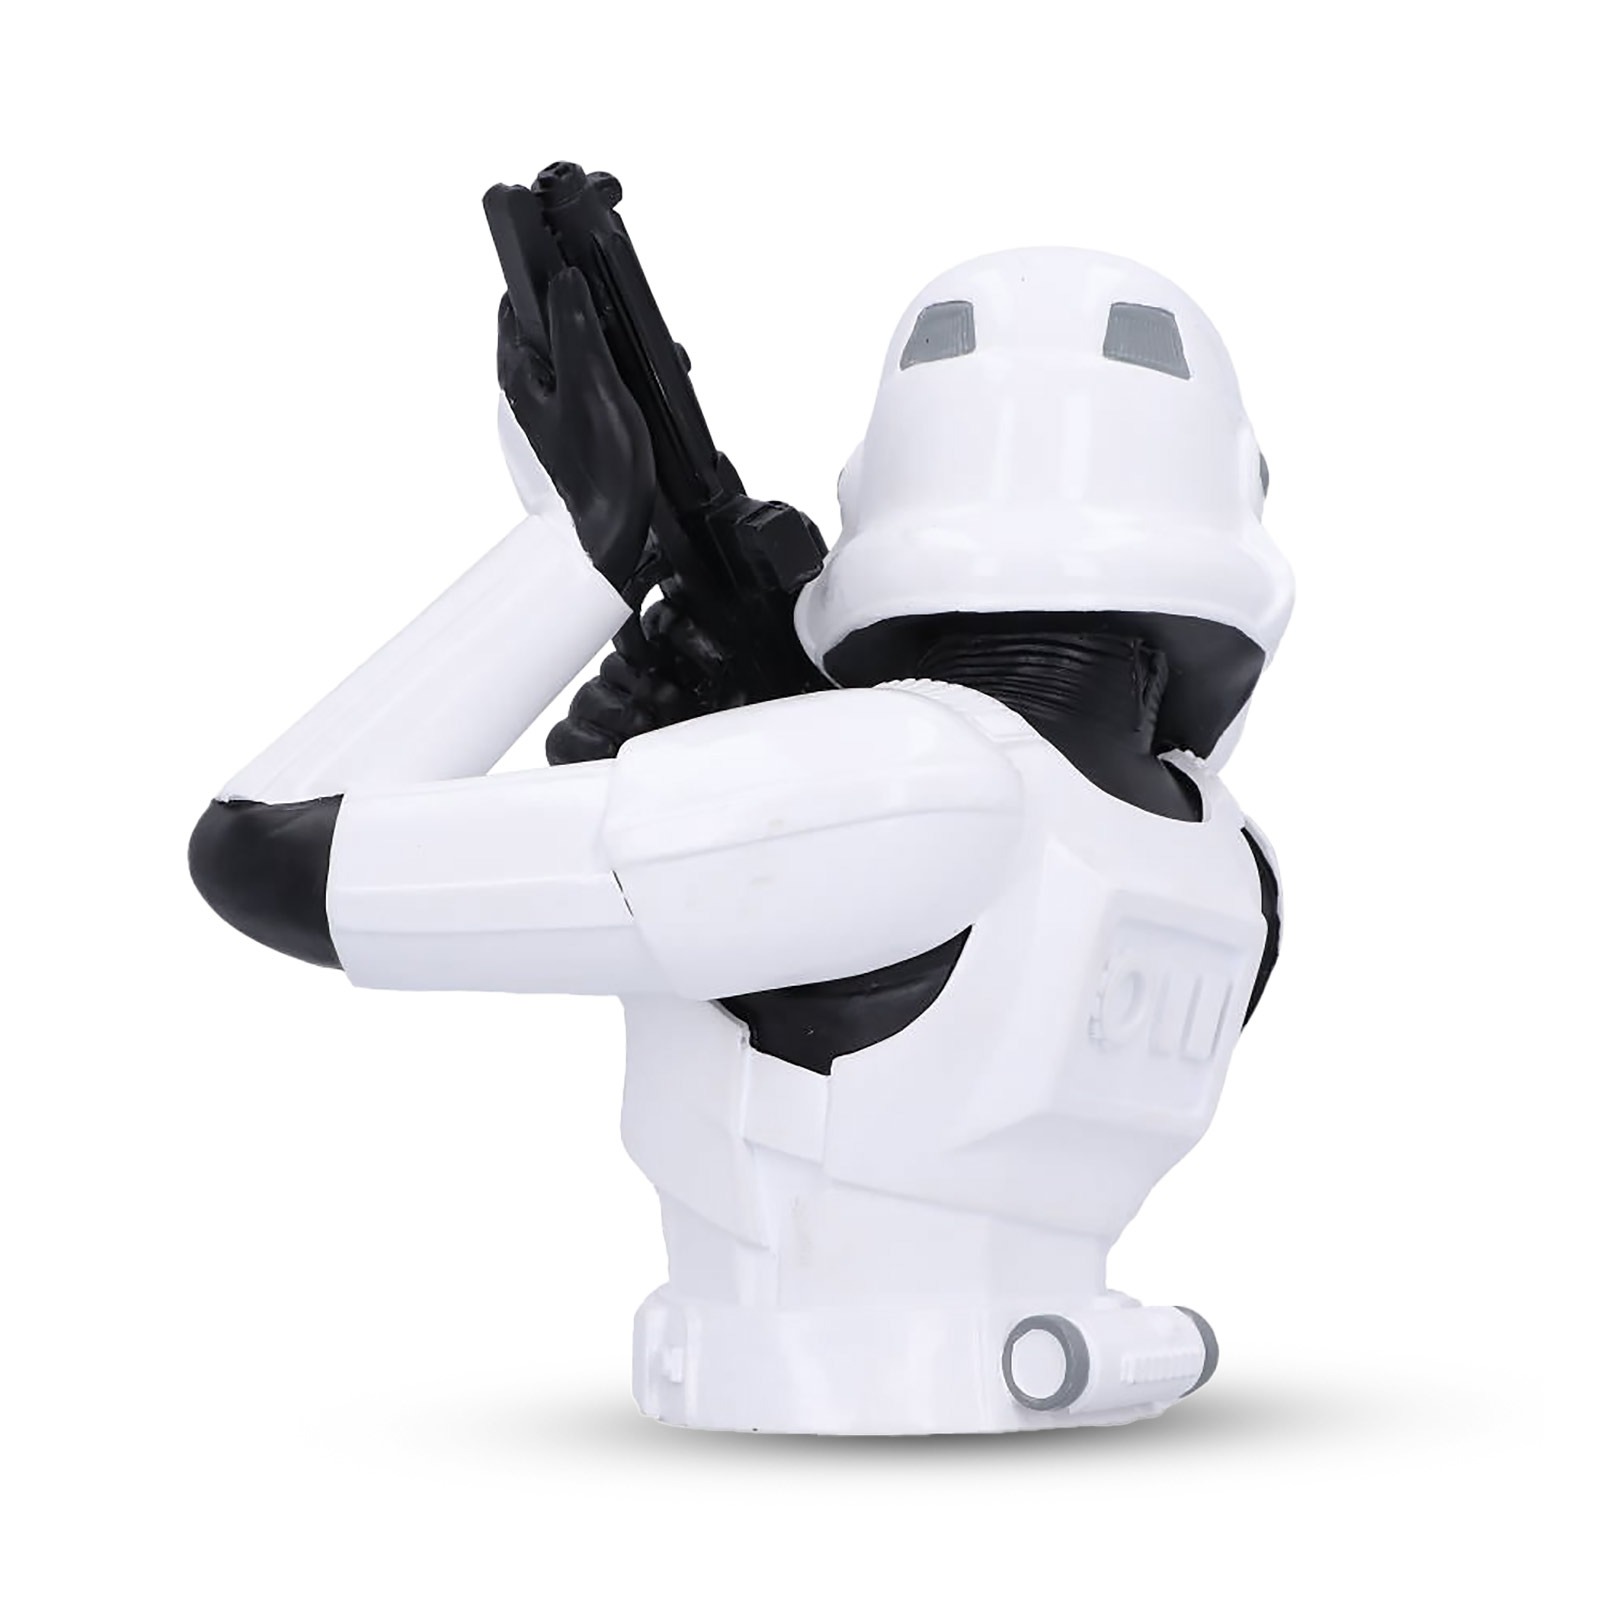 Original Stormtrooper Bust for Star Wars Fans